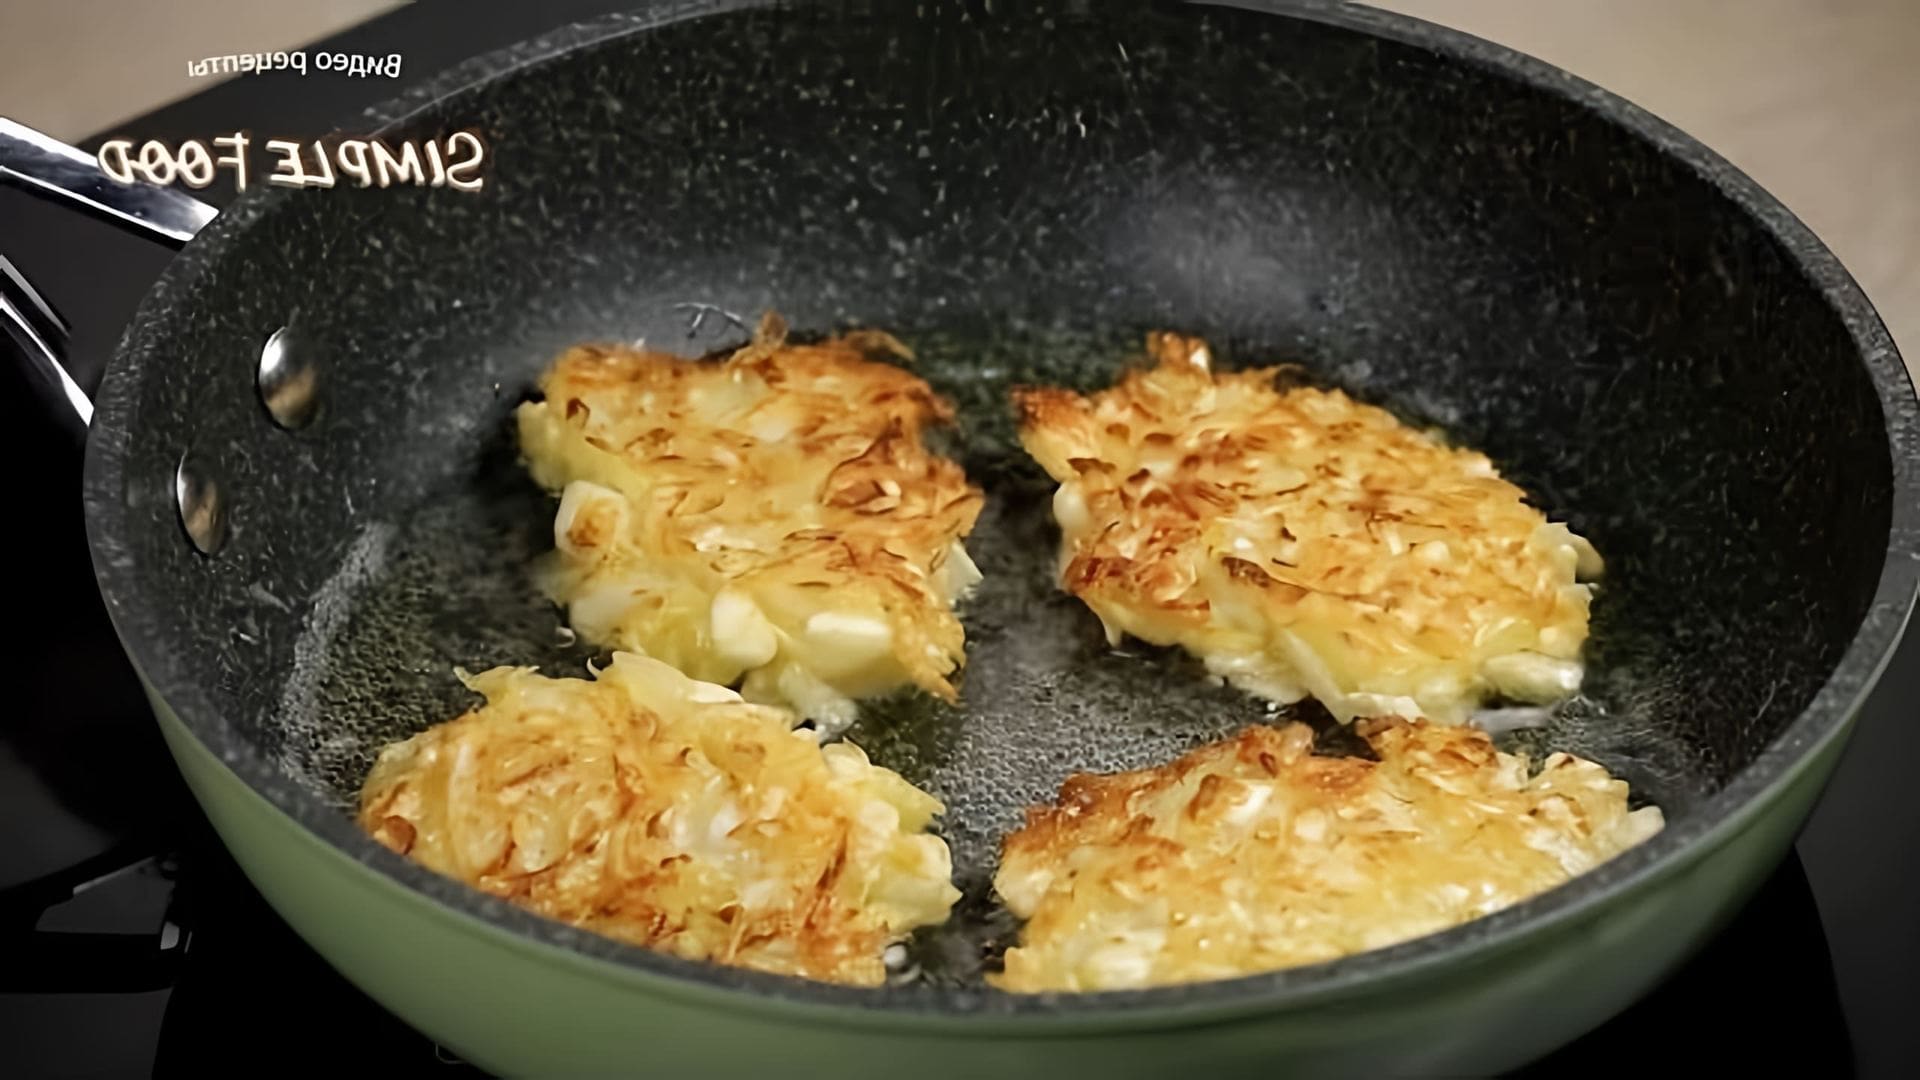 В этом видео-ролике будет представлен новый рецепт котлеток с капустой, который можно приготовить быстро и легко для ужина или обеда